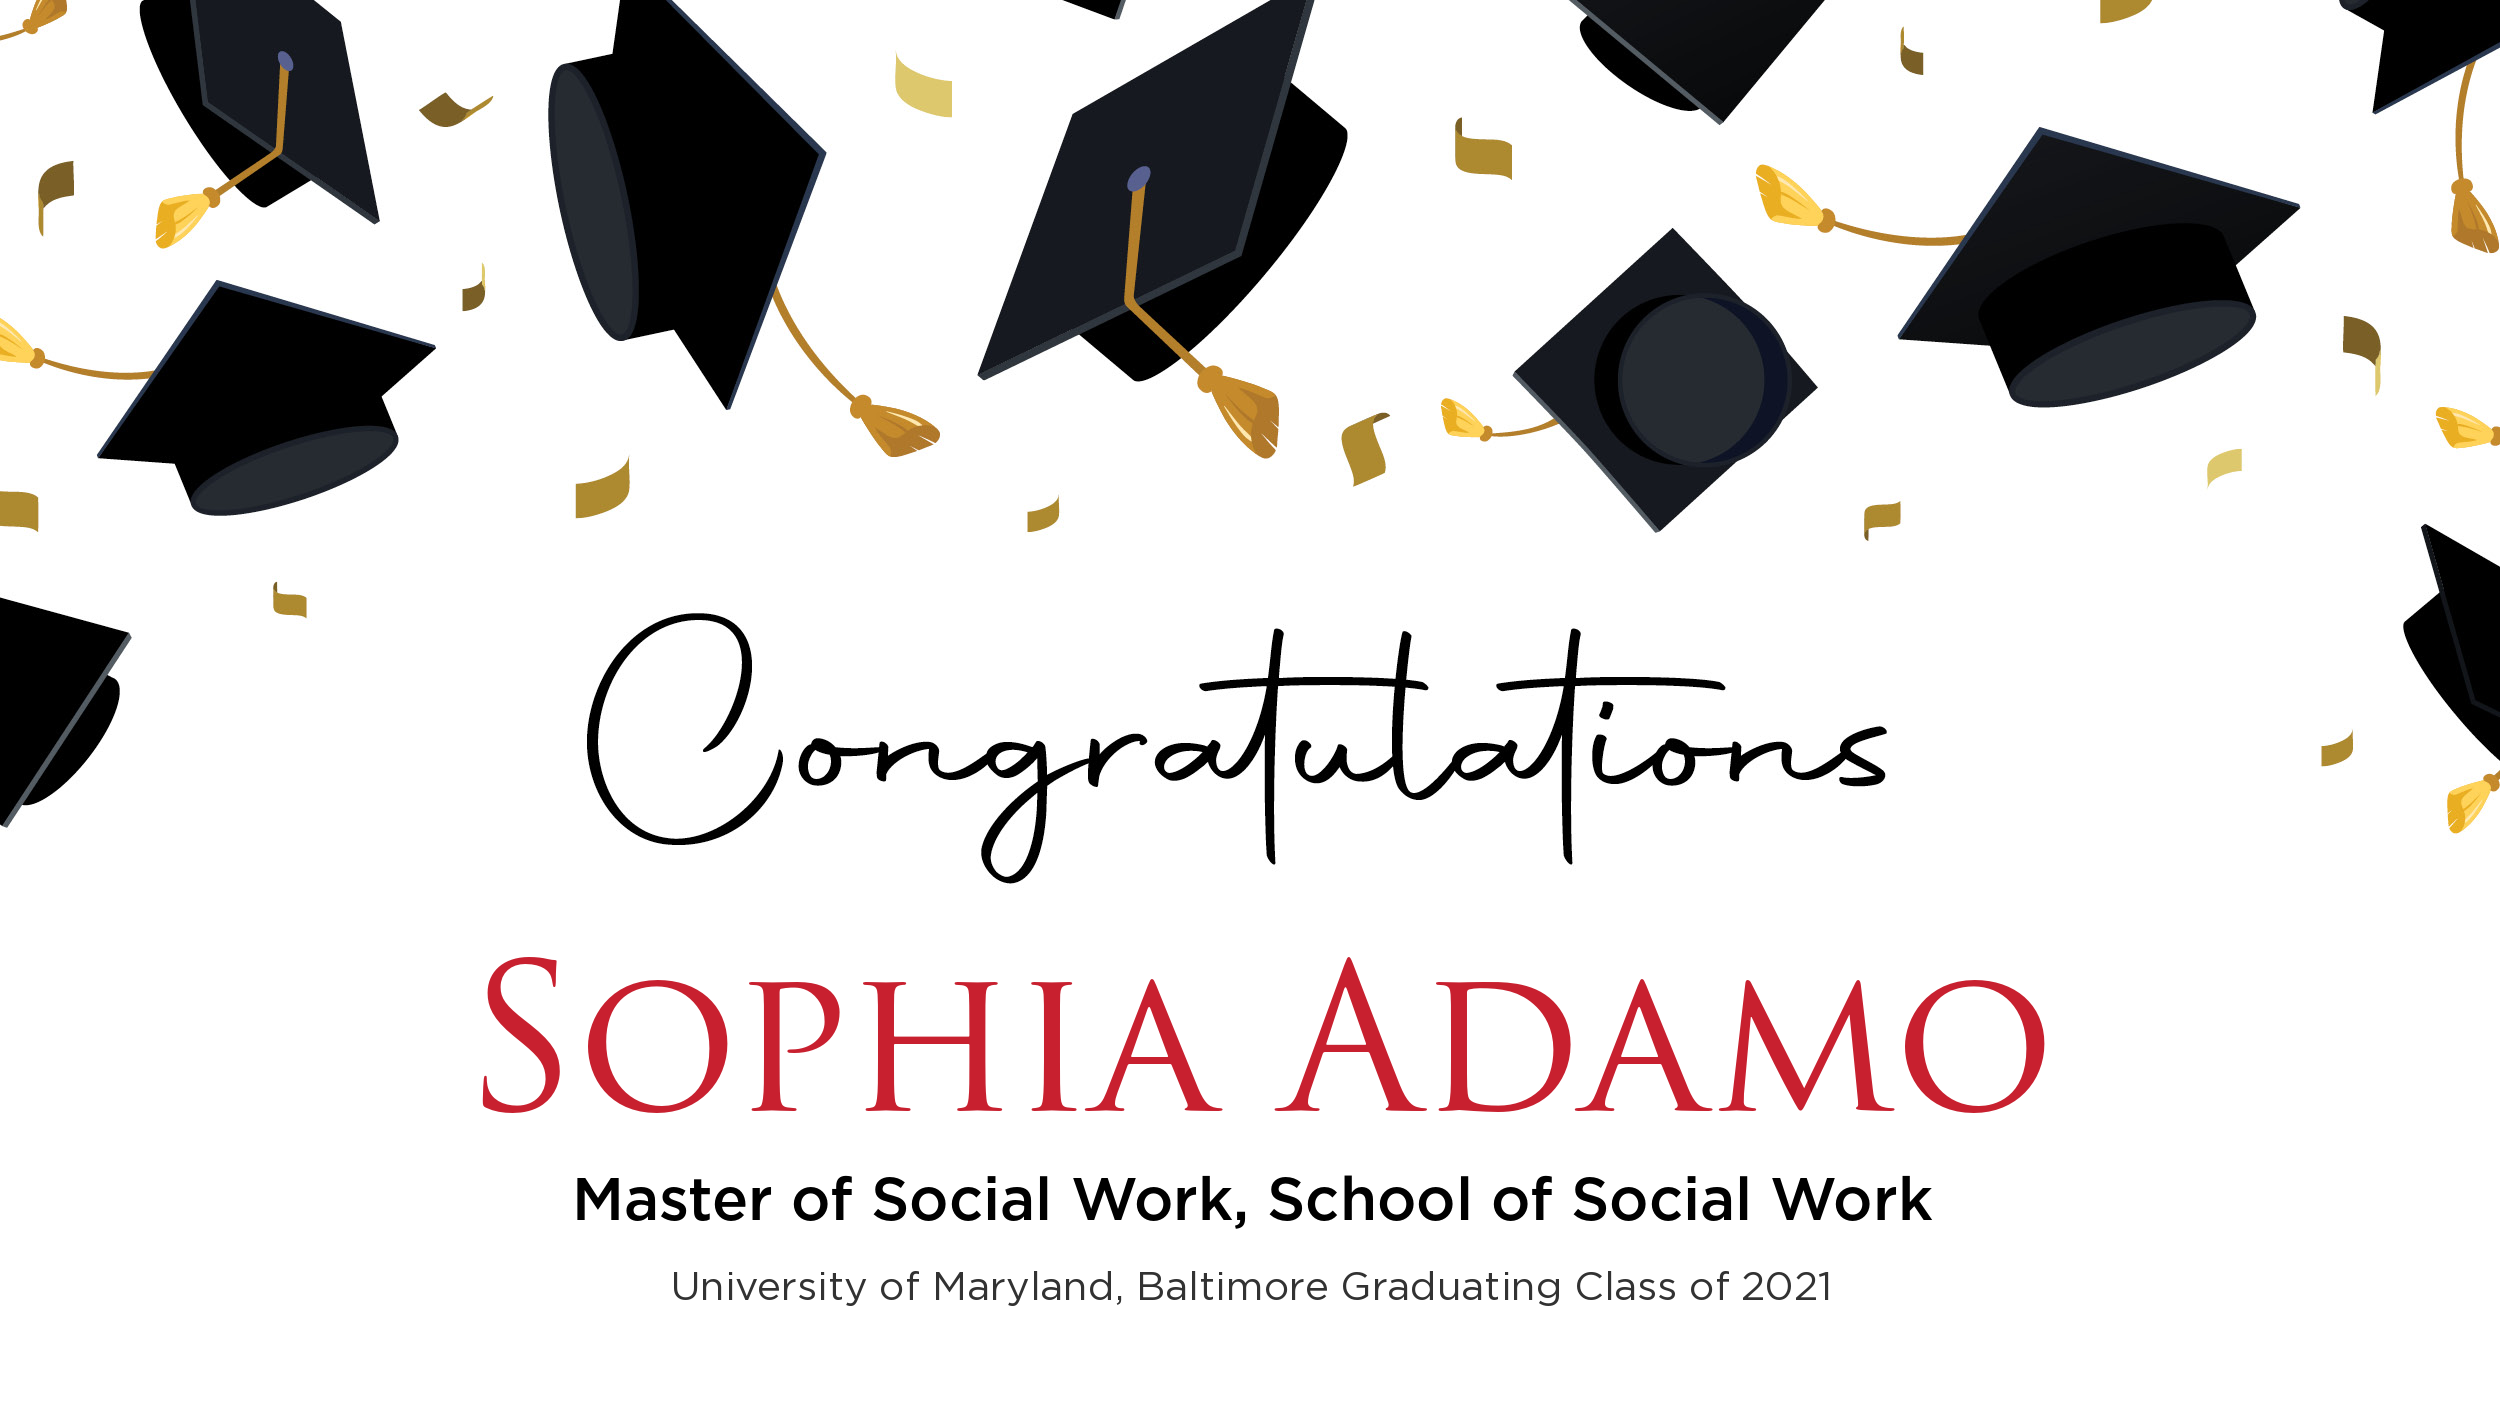 Congratulations Sophia Adamo, Master of Social Work